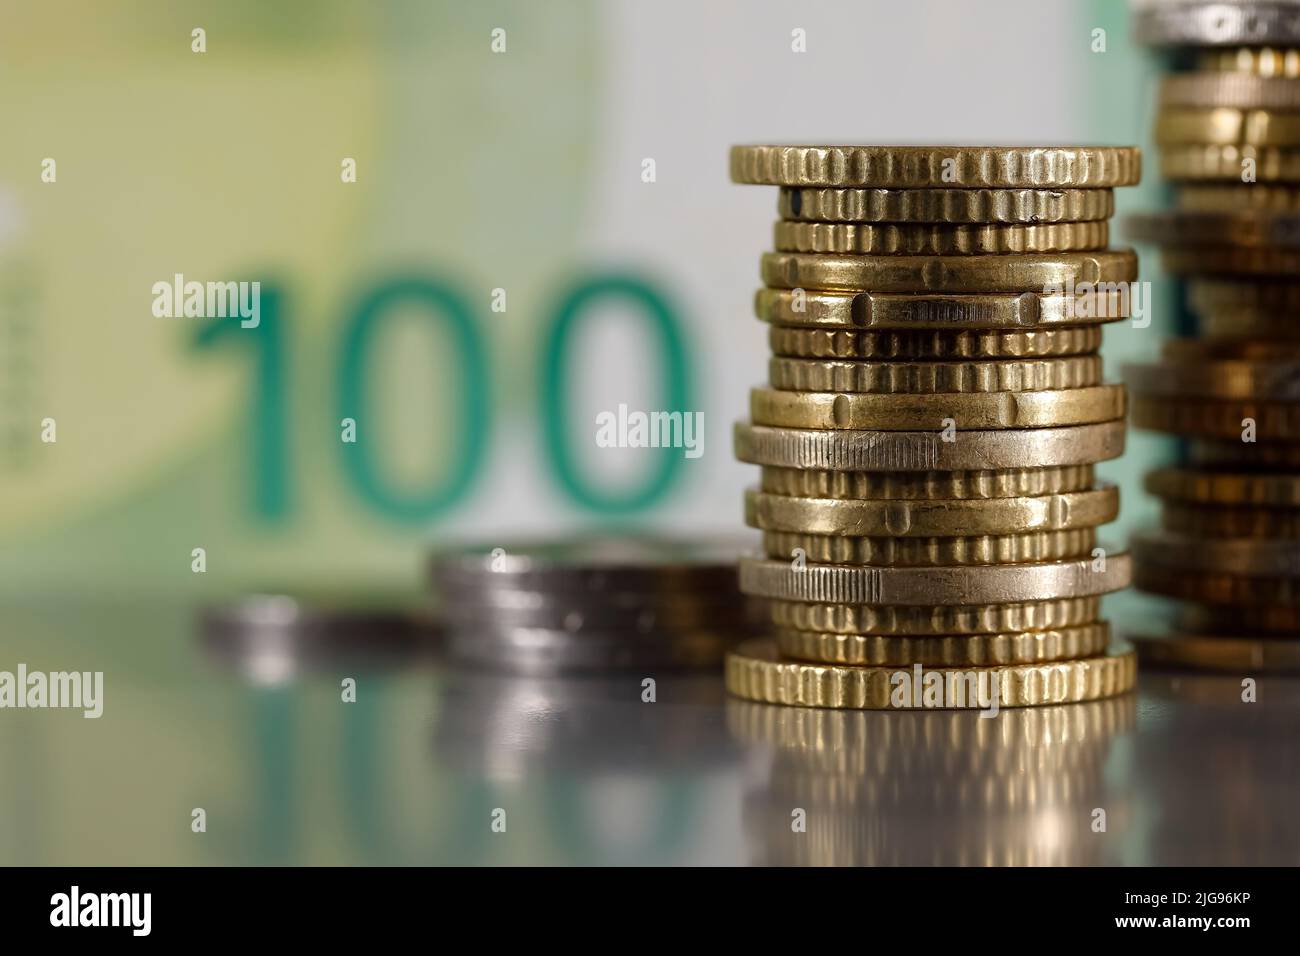 Se trata de monedas en euros que se han apilado sobre una superficie gris y plana y son visibles contra un billete borroso de 100 euros. Foto de stock